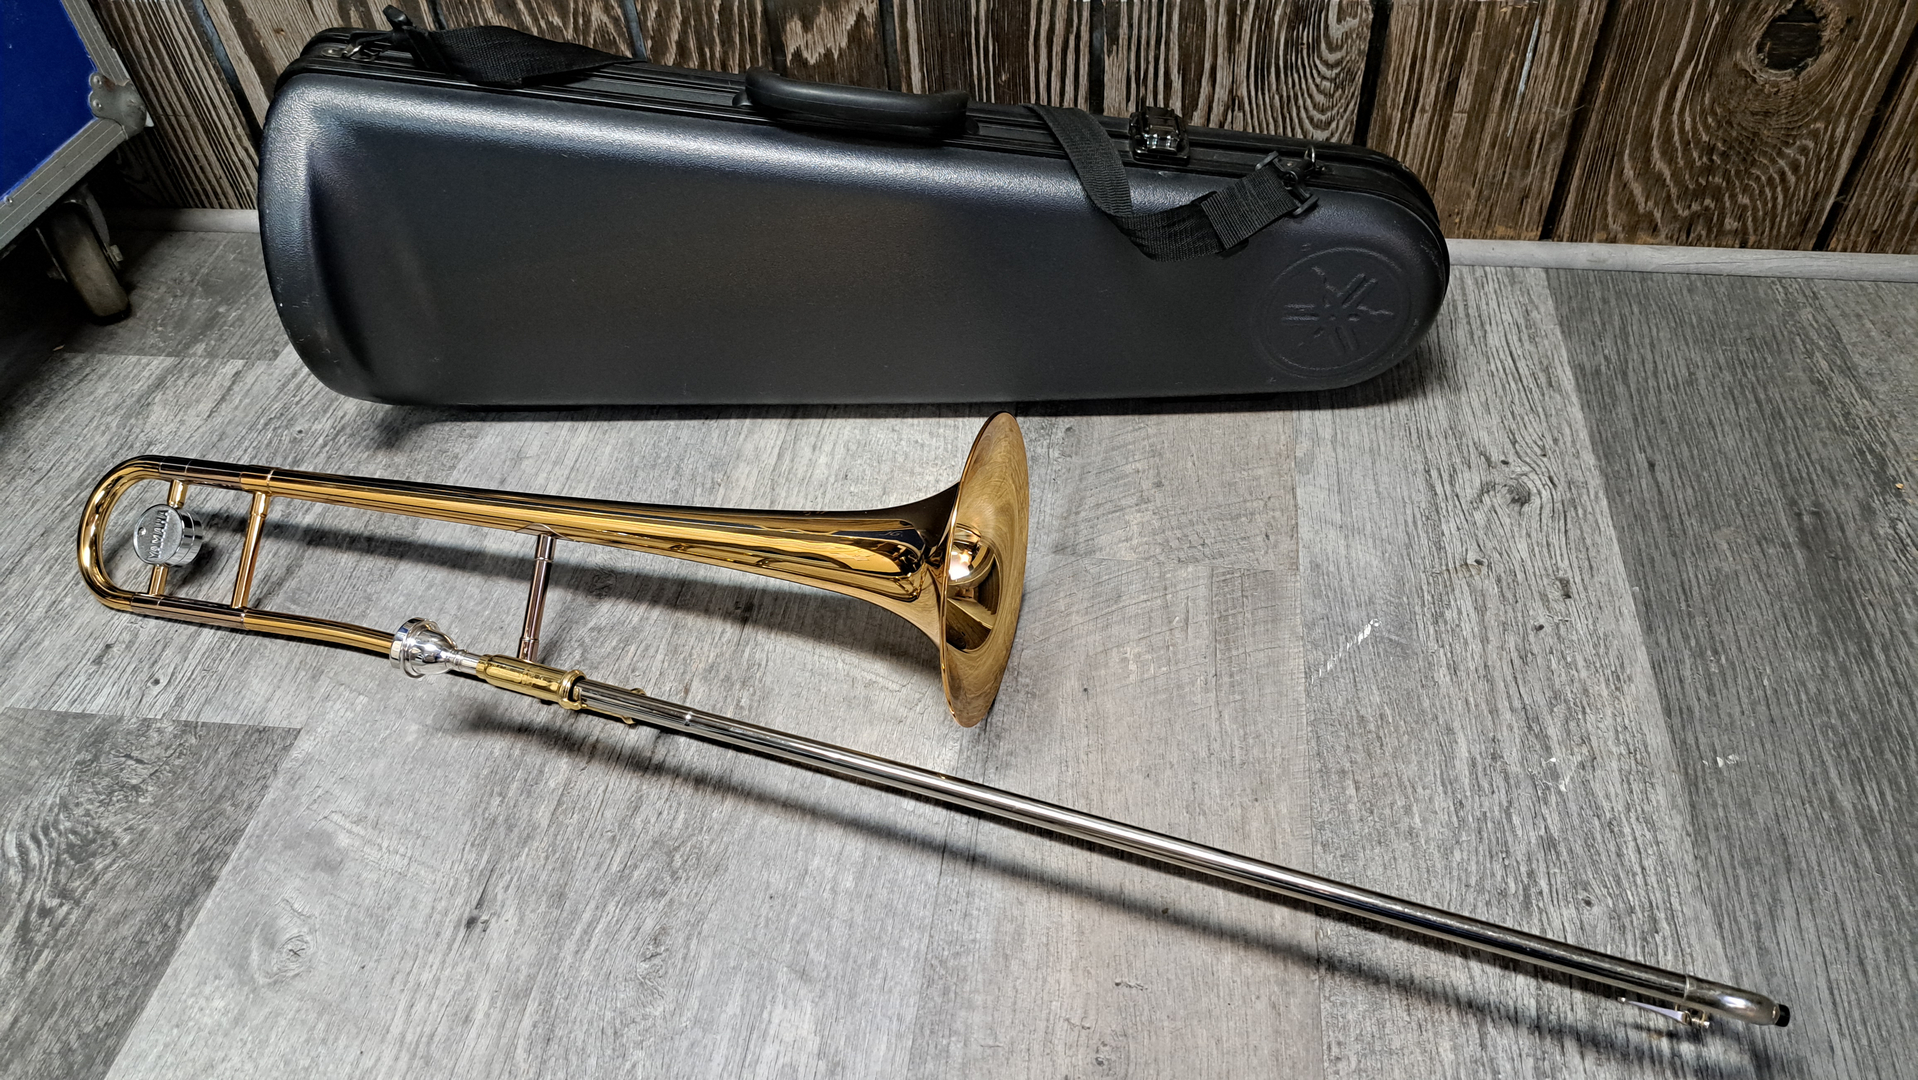 ホルトントロンボーン TR680 made in U.S.A - 管楽器